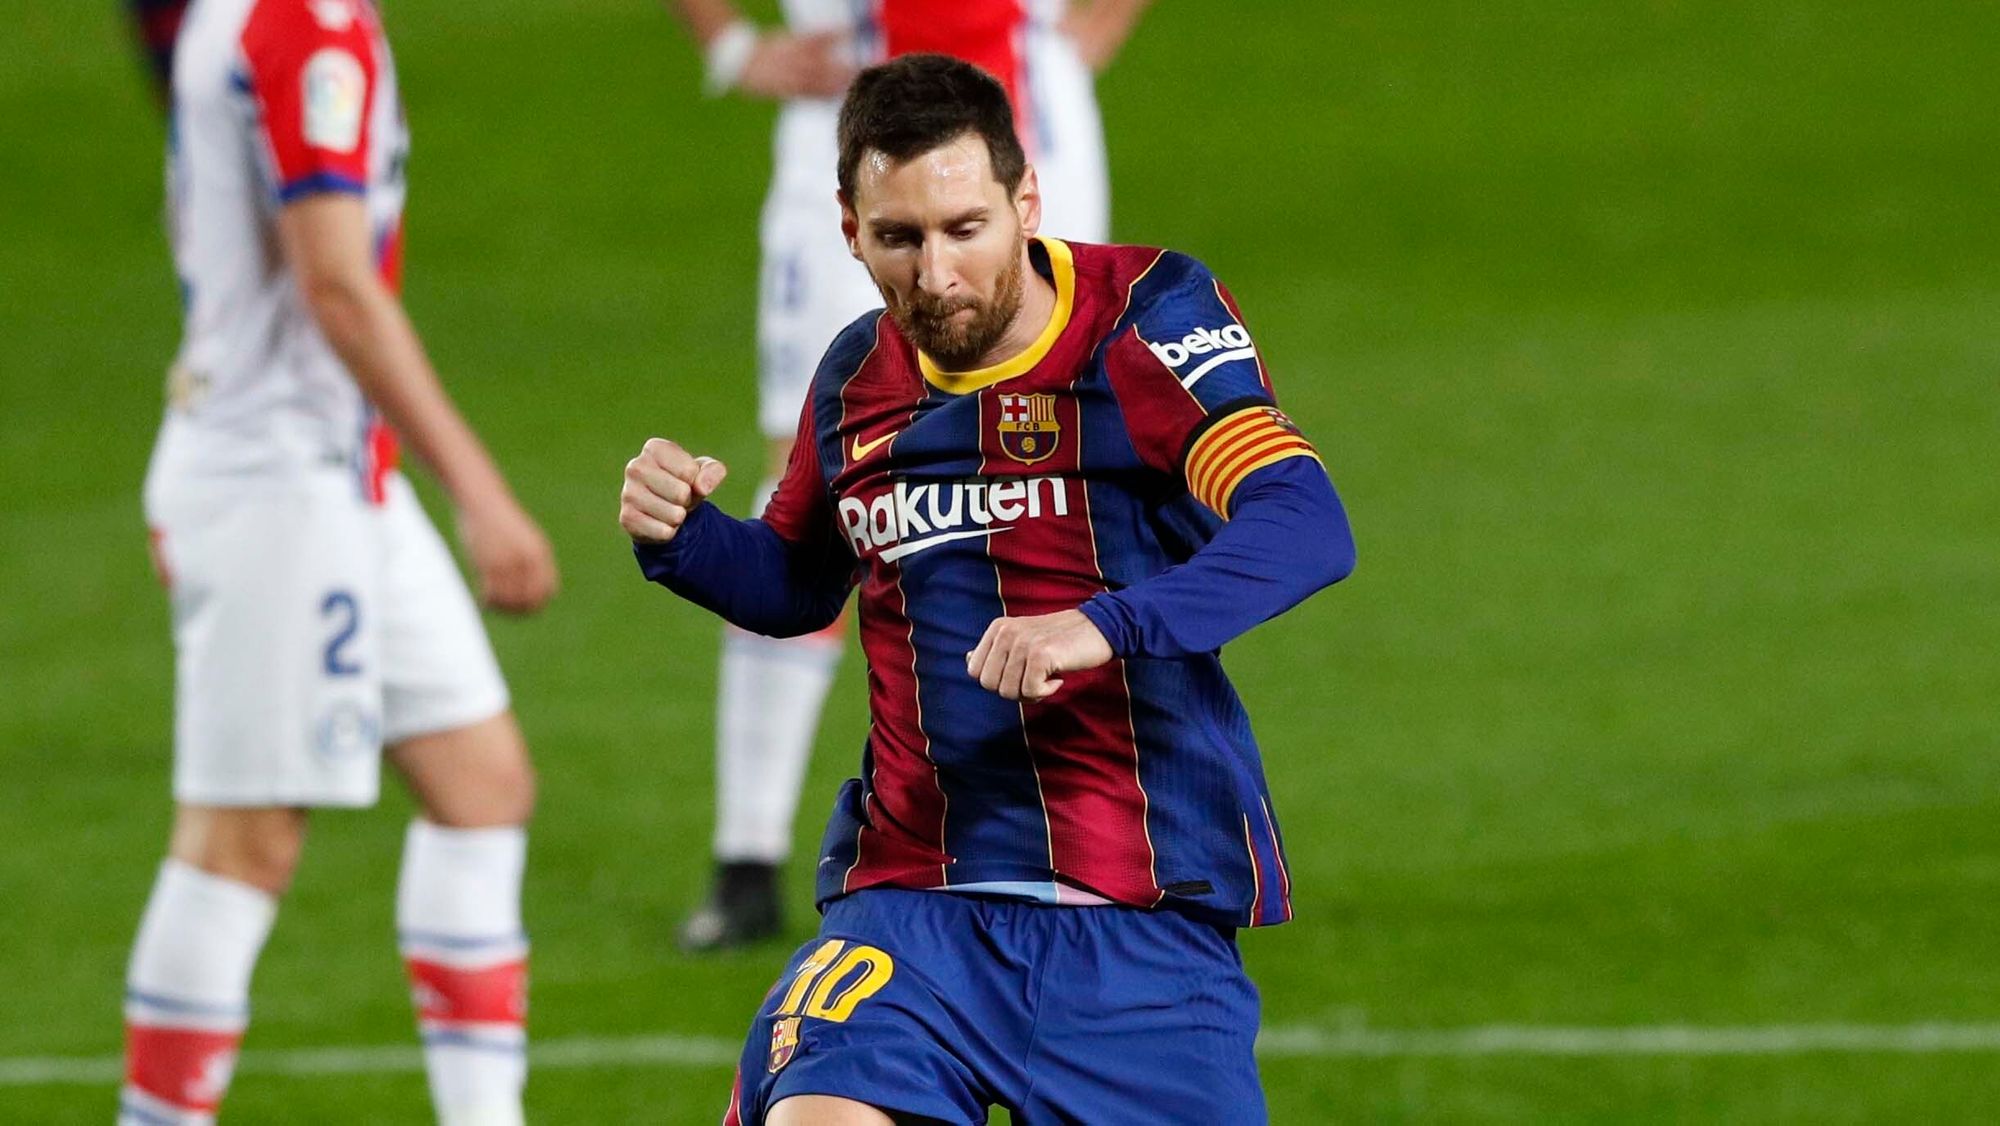 1. Lionel Messi, extremo, Barcelona: 16 goles y 7 asistencias en 998 minutos jugados